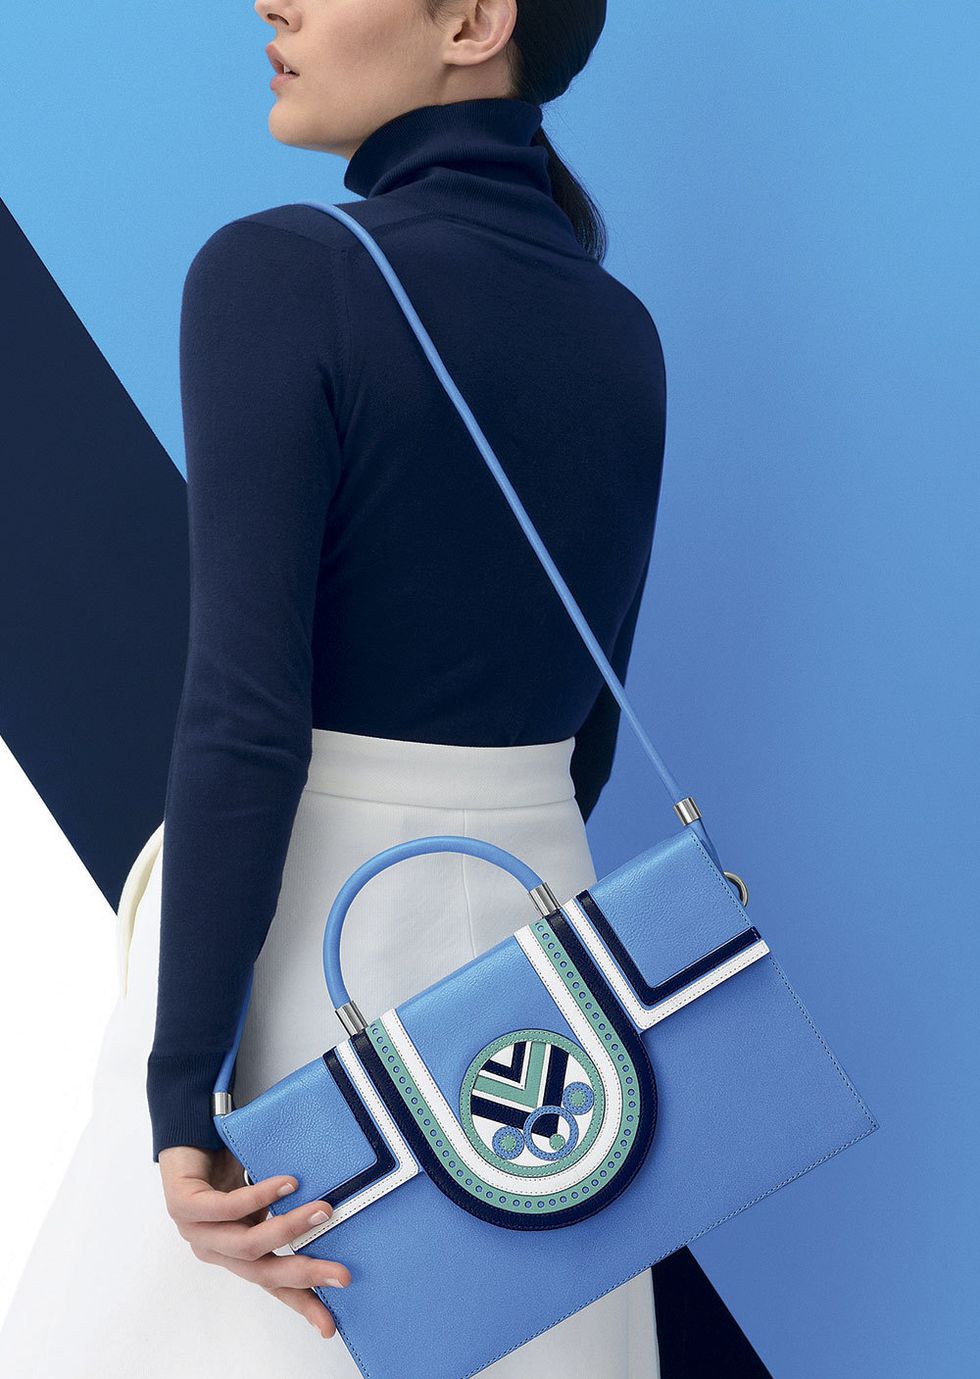 Sleeve, Elbow, Electric blue, Bag, Cobalt blue, Shoulder bag, Glove, Active pants, Hood, 